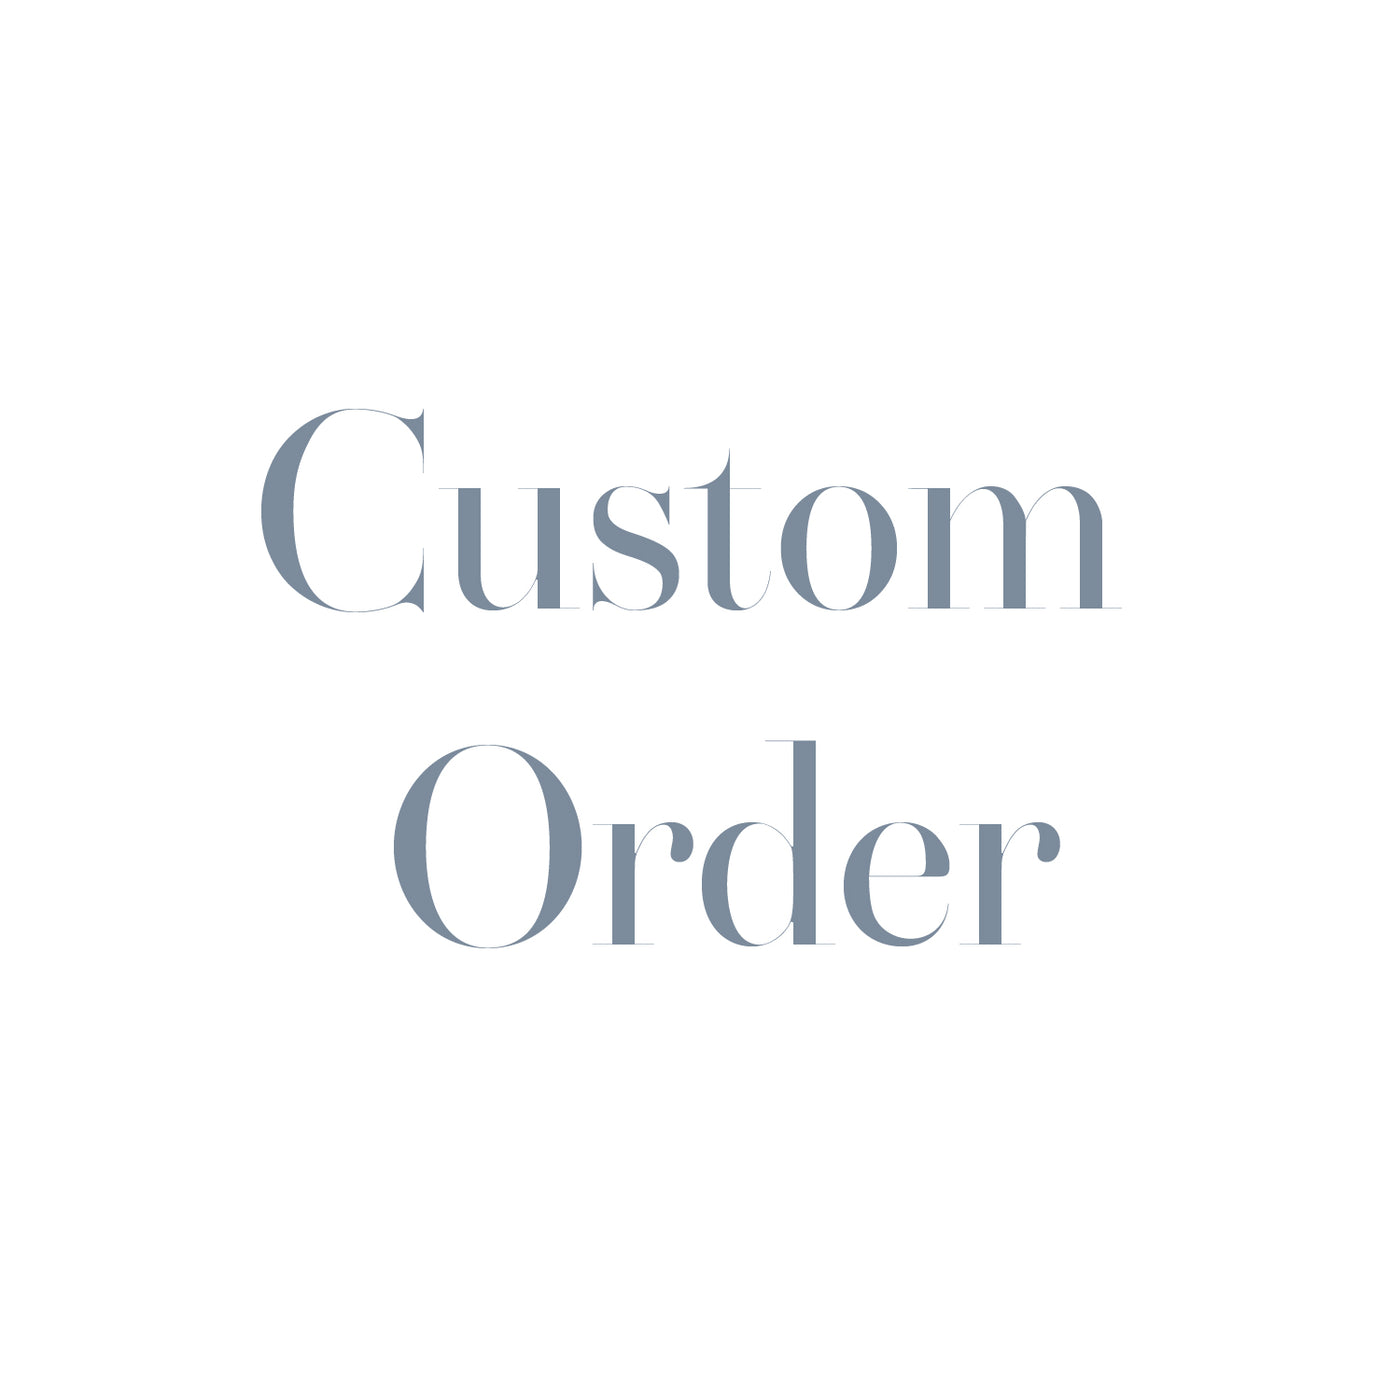 Custom Listing for Jen